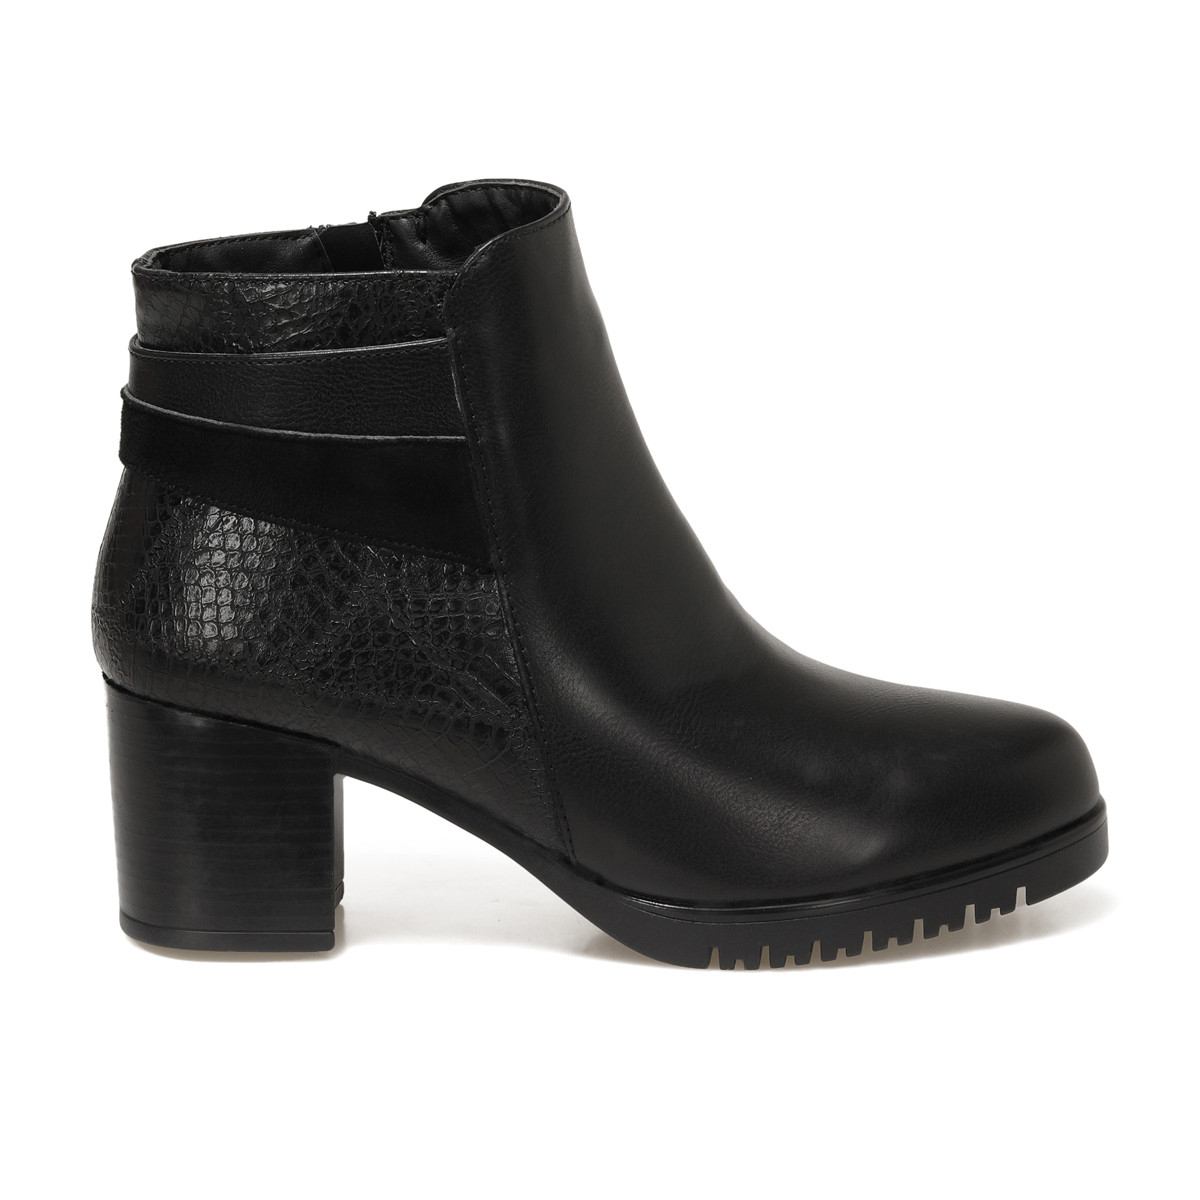 Flo TRV1775 Siyah Kadın Topuklu Ayakkabı. 2